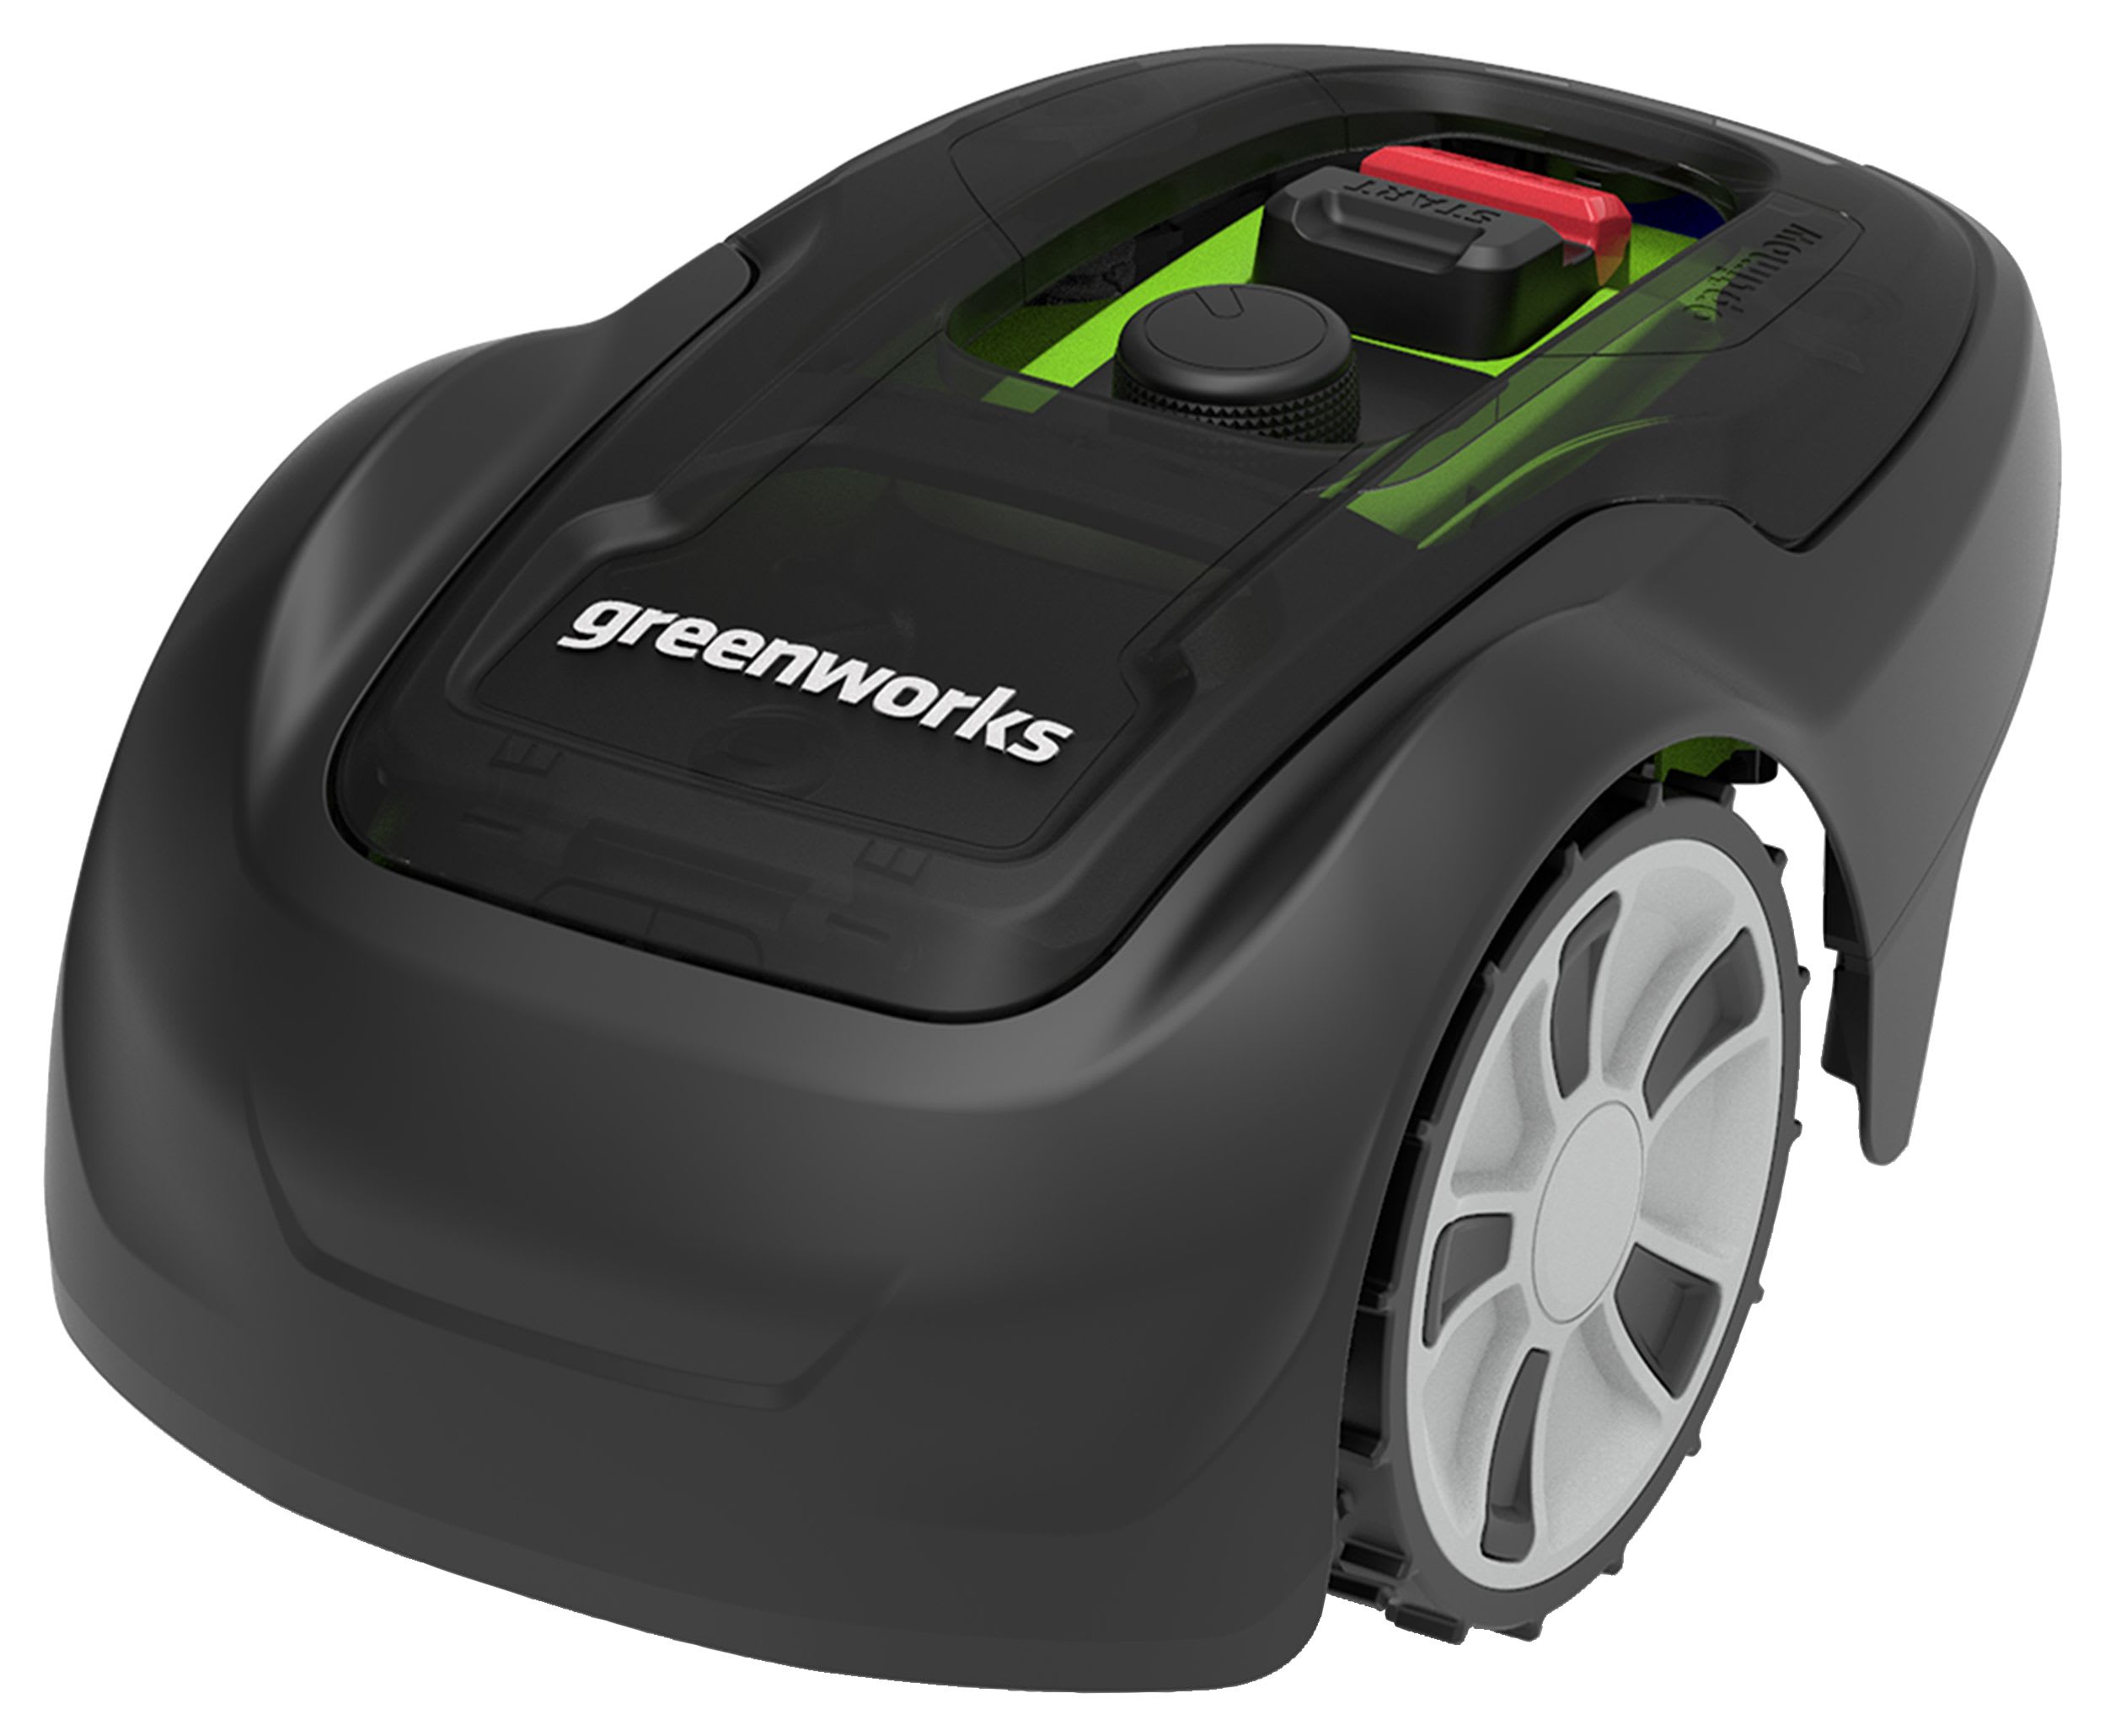 Greenworks Robotic Lightweight Lawn Mower - 450m²